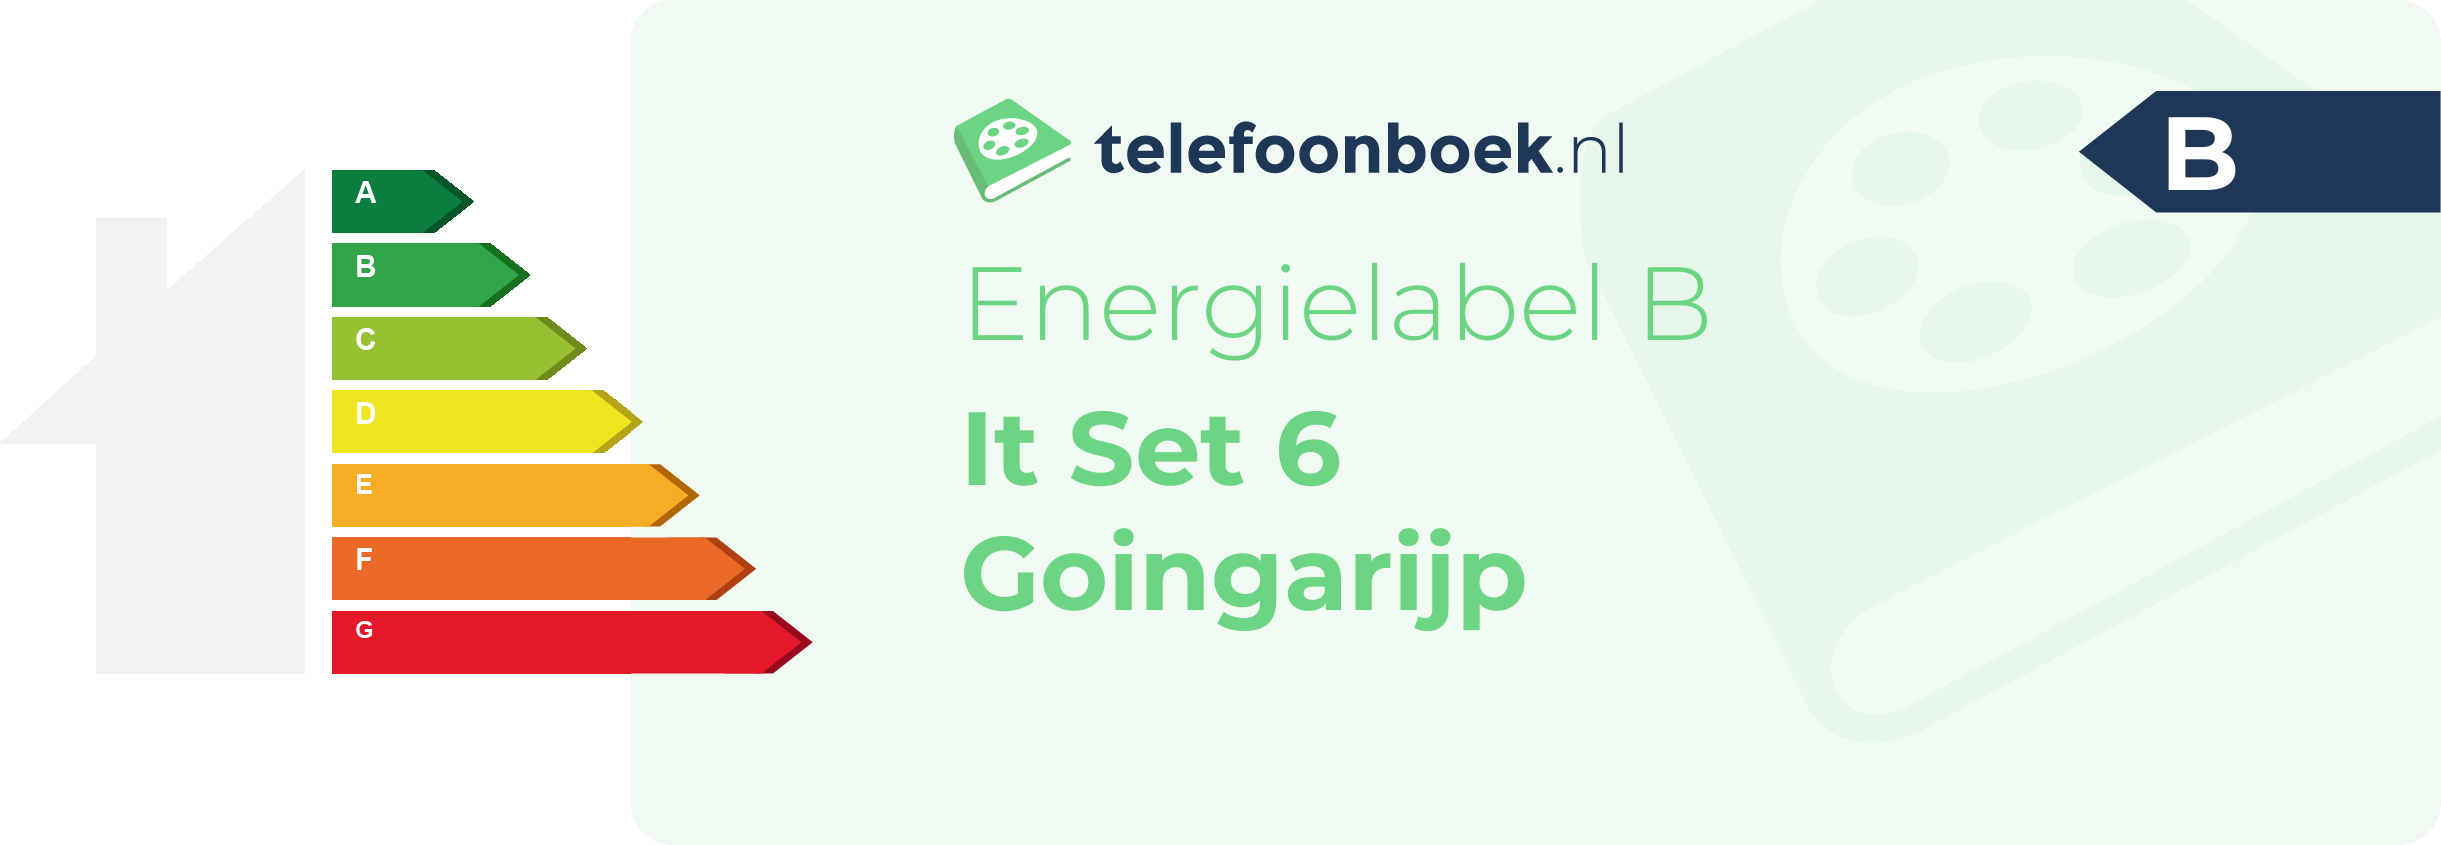 Energielabel It Set 6 Goingarijp